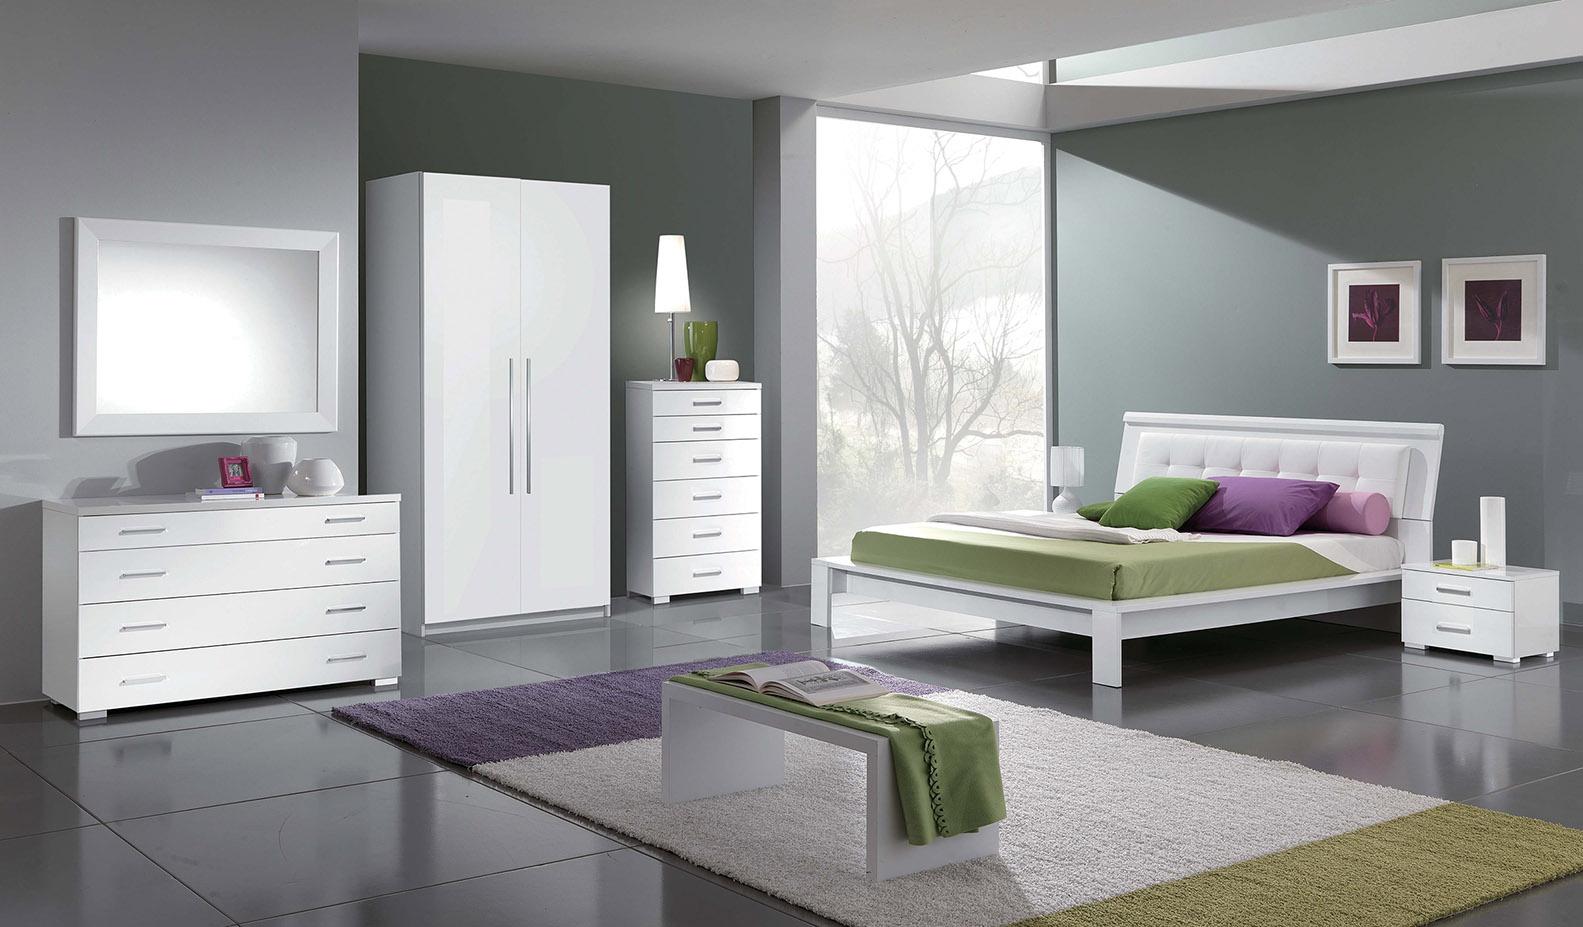 

    
ESF Geko Momo Modern White High Gloss Finish Full Size Bed Bedroom Set 5Pcs
